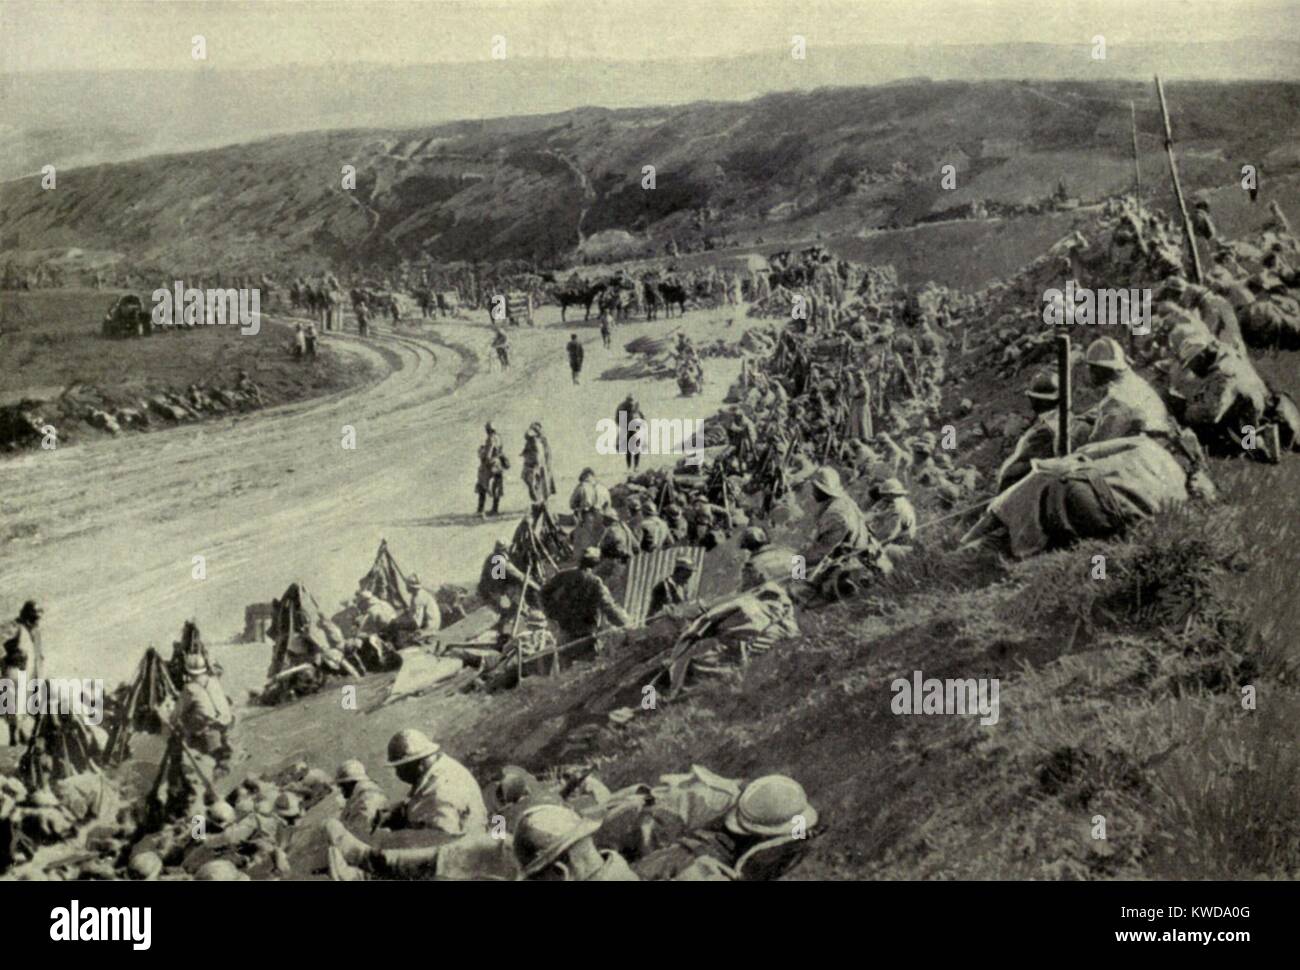 Guerra mondiale 1. Somme offensivo. Una concentrazione di truppe francesi si sta svolgendo un'ora prima dell'attacco su Sailly-Saillisel. Il villaggio è stato vinto il 1 novembre 1916, nel corso delle ultime settimane della battaglia della Somme. (BSLOC 2013 1 114) Foto Stock